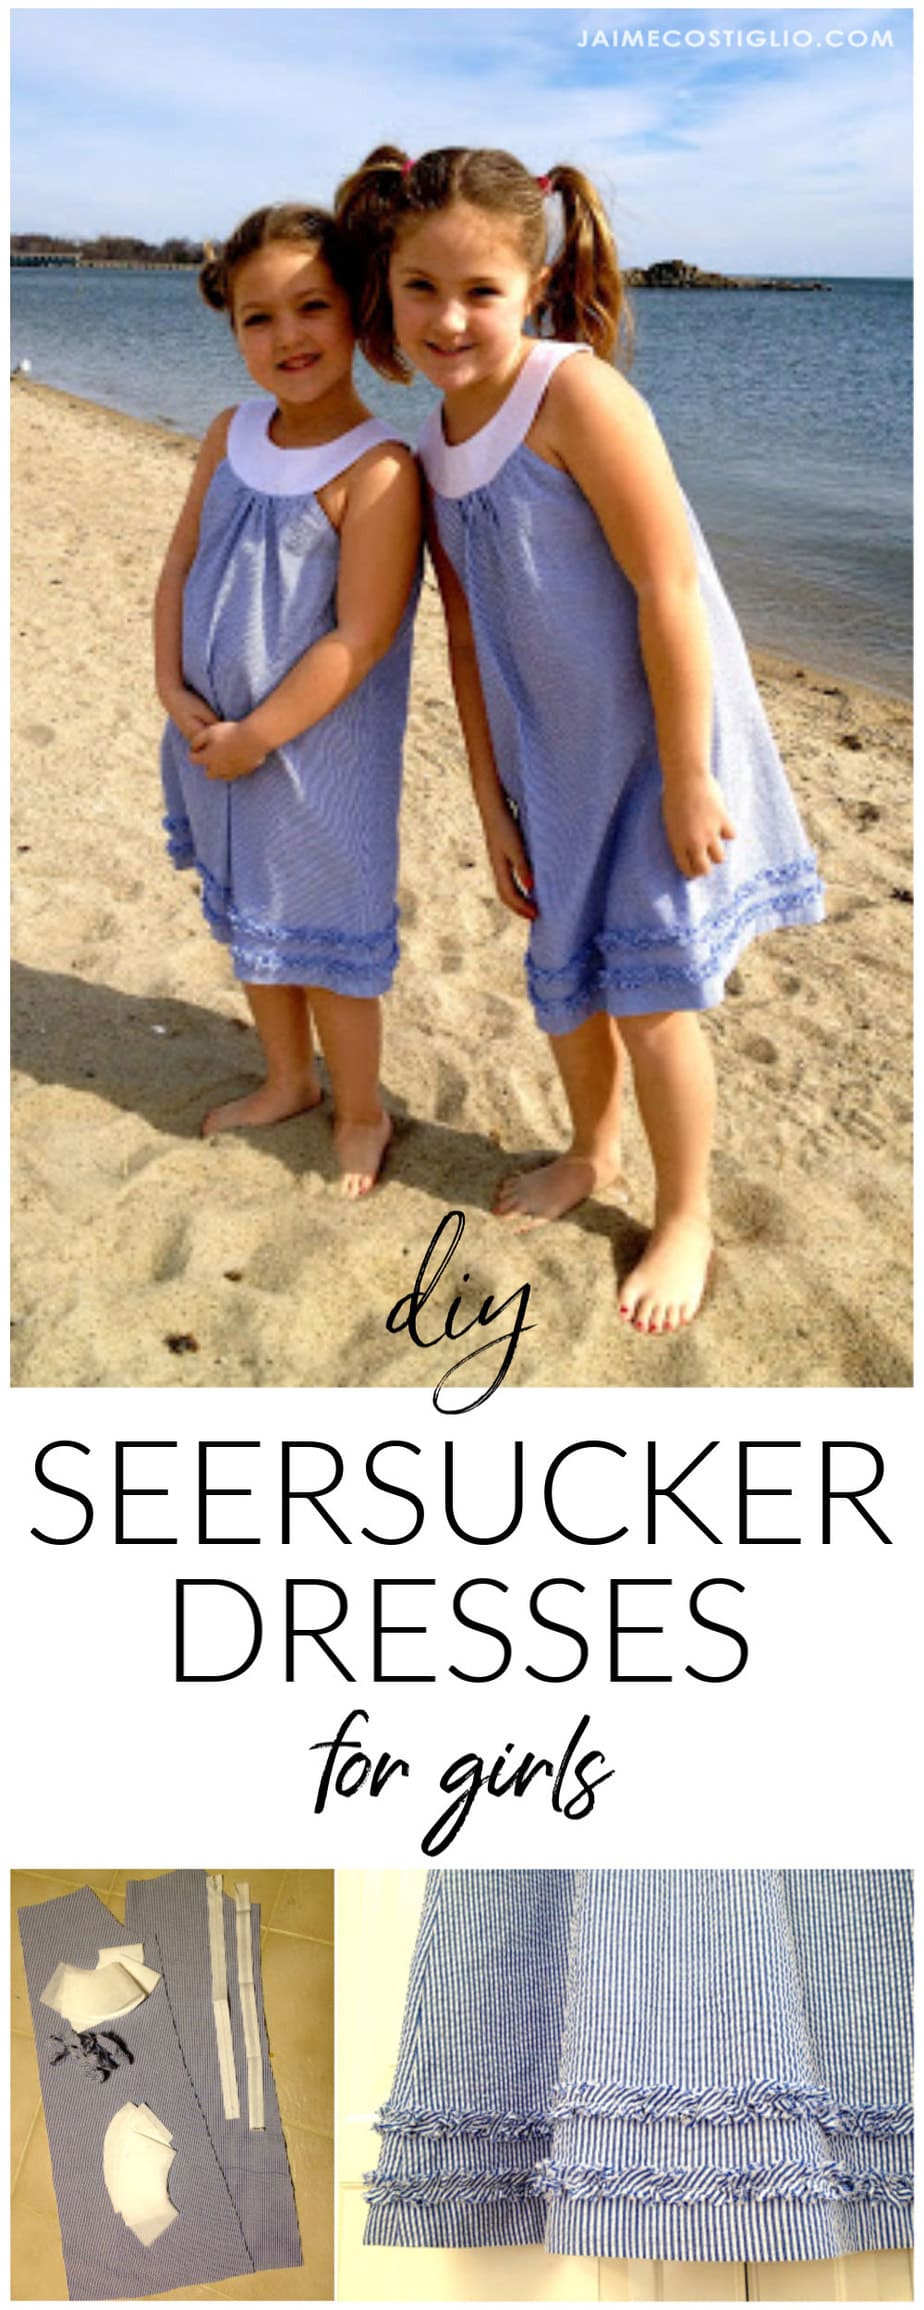 diy seersucker dresses for girls